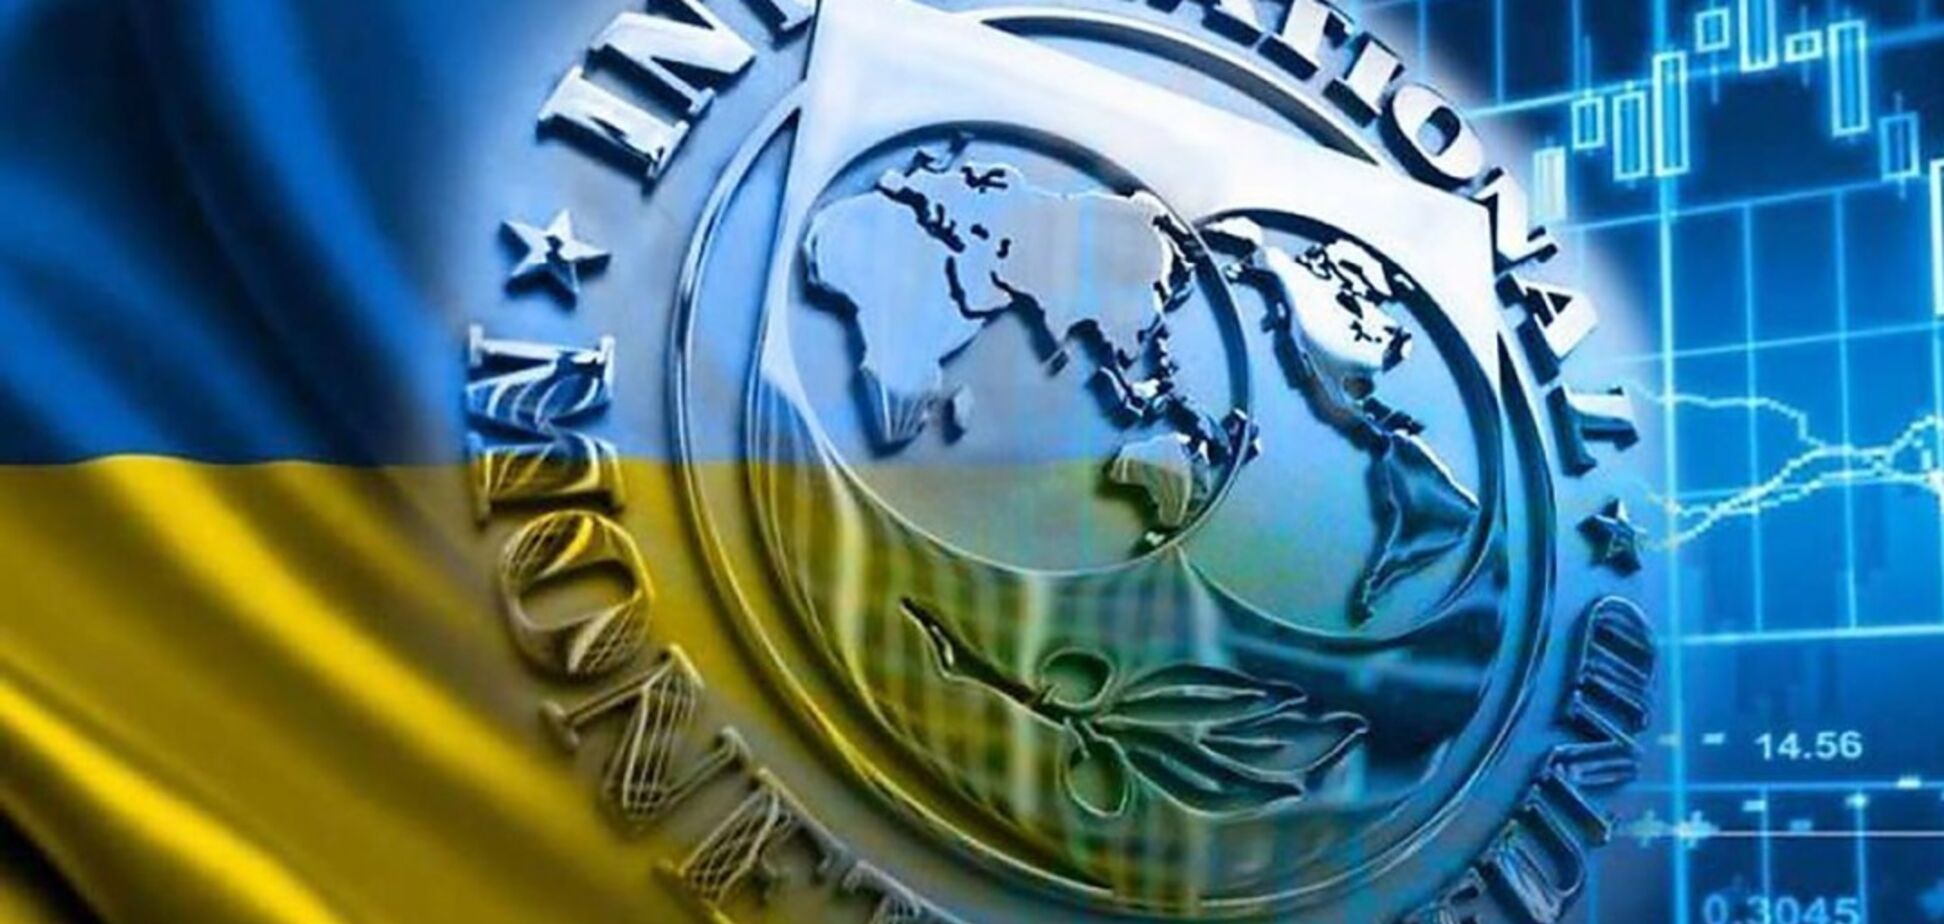 Єдиний шанс для України отримати кредит від МВФ та уникнути дефолту